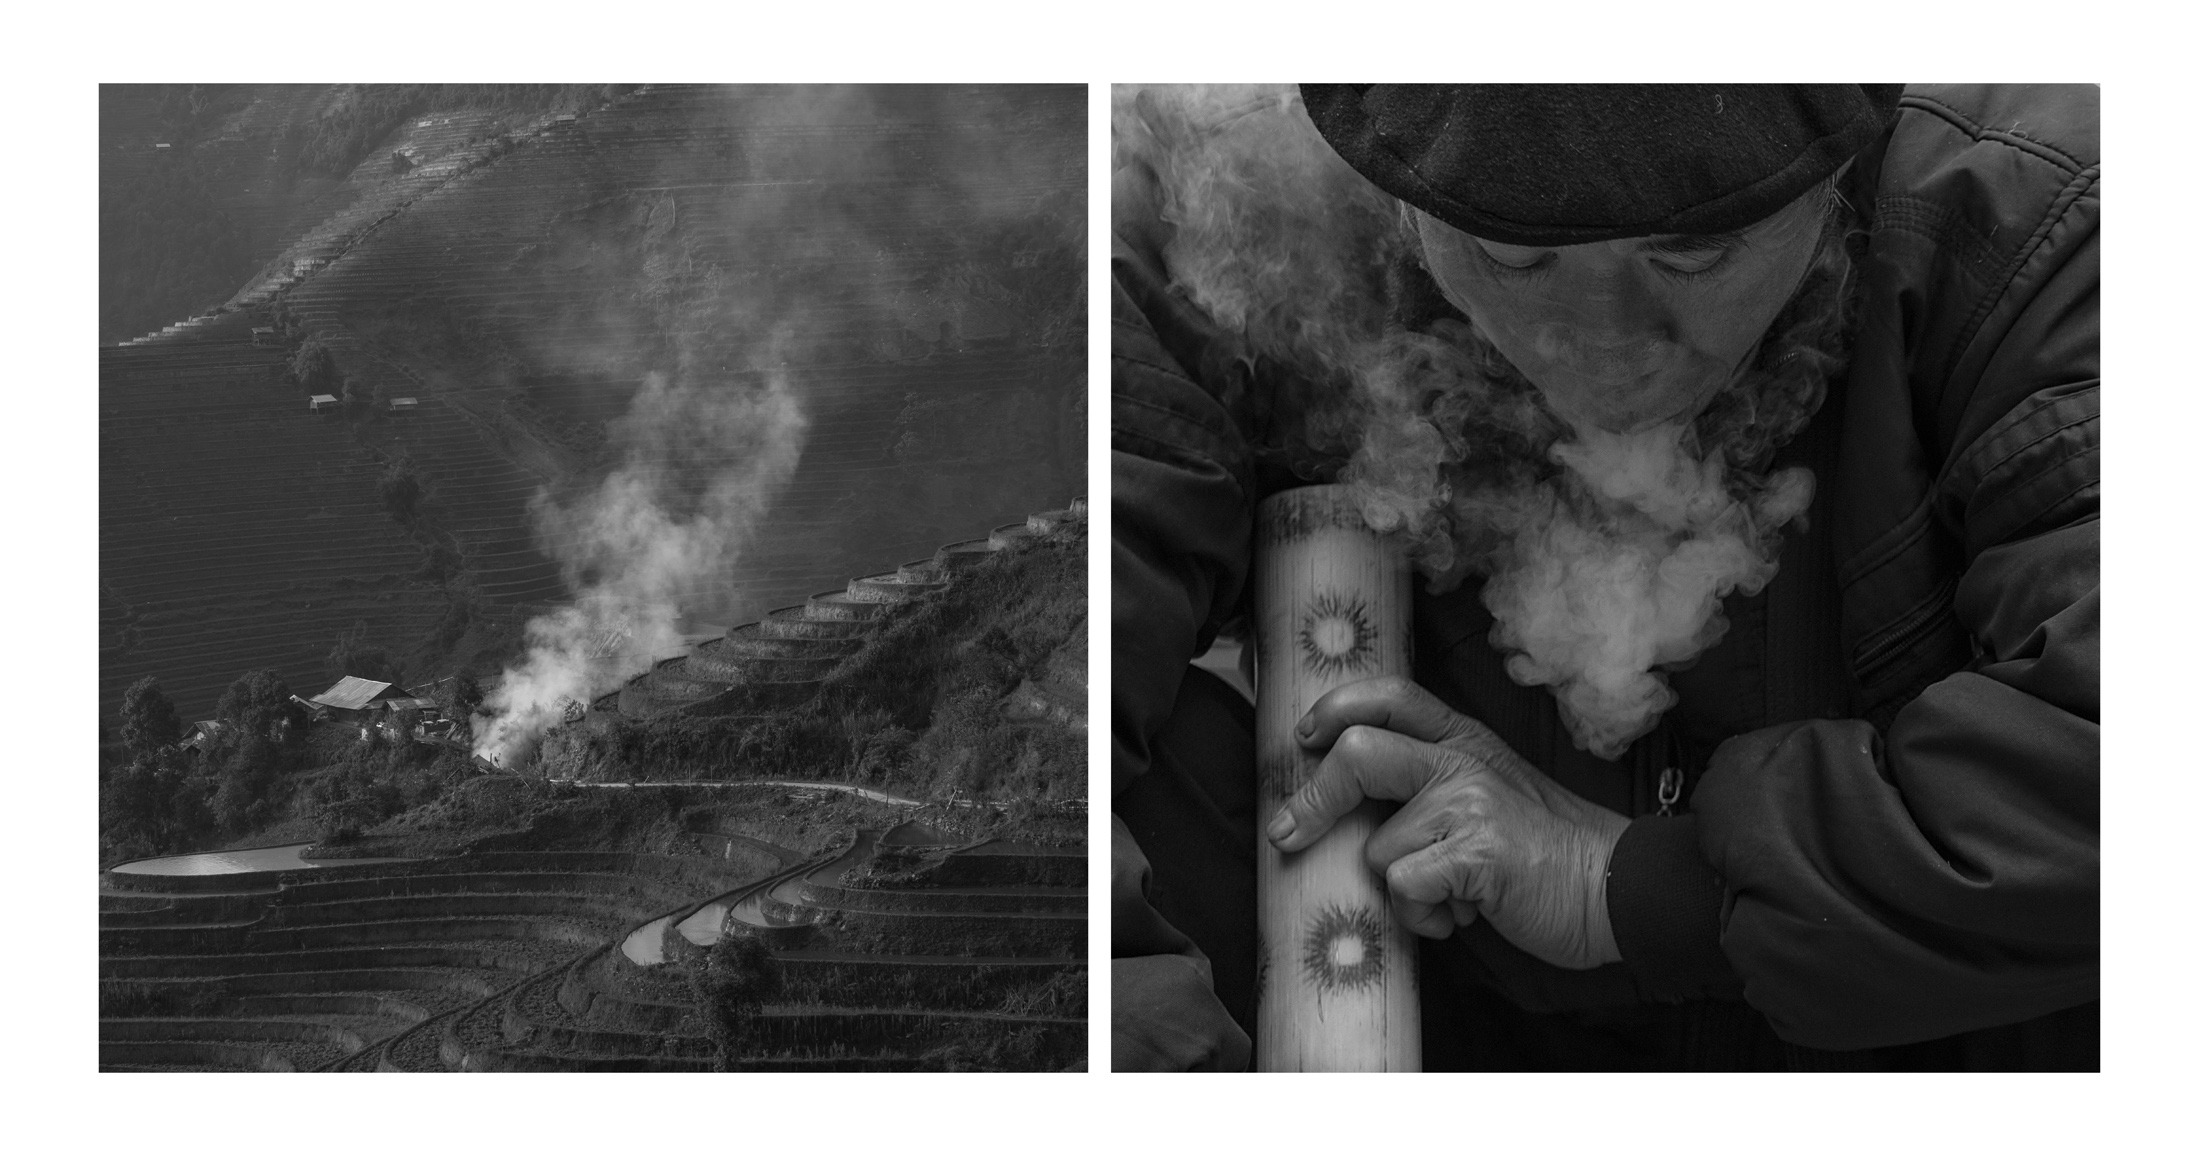 мужик курит терасса в дыму.jpg